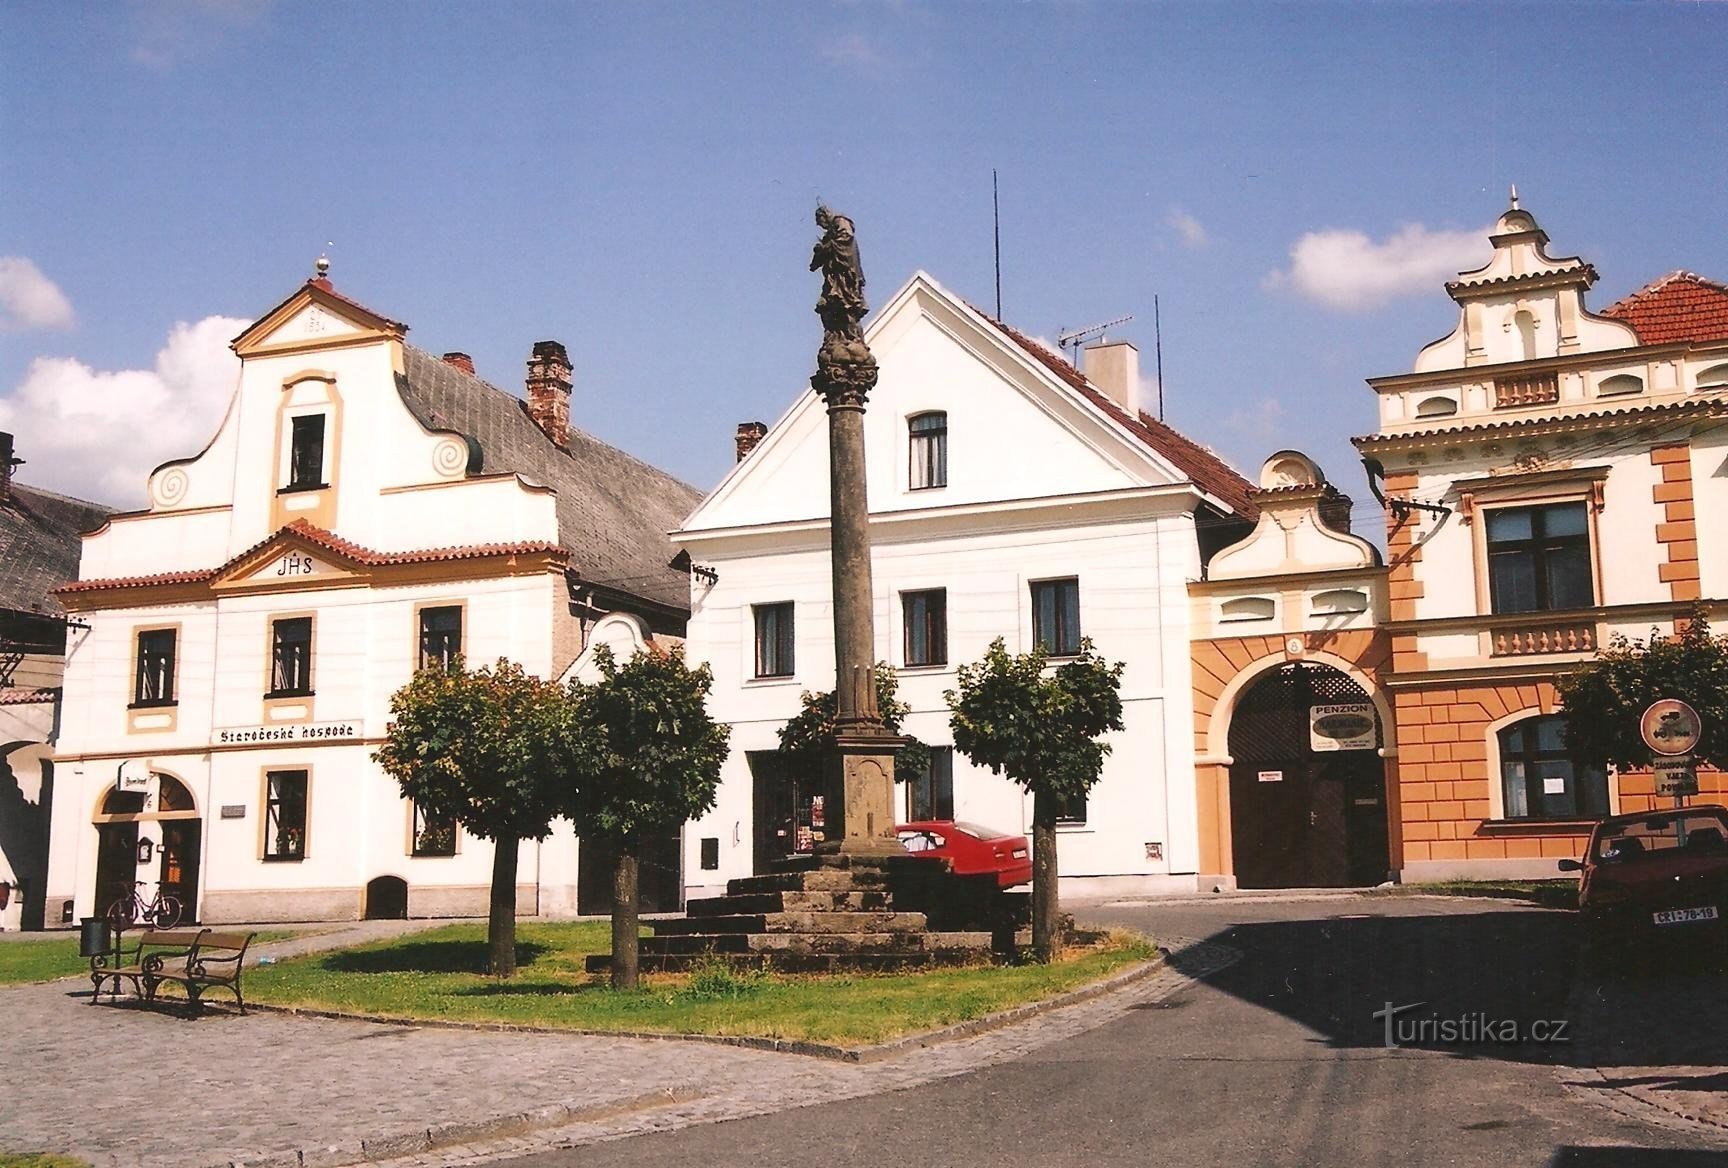 Luz - plaza